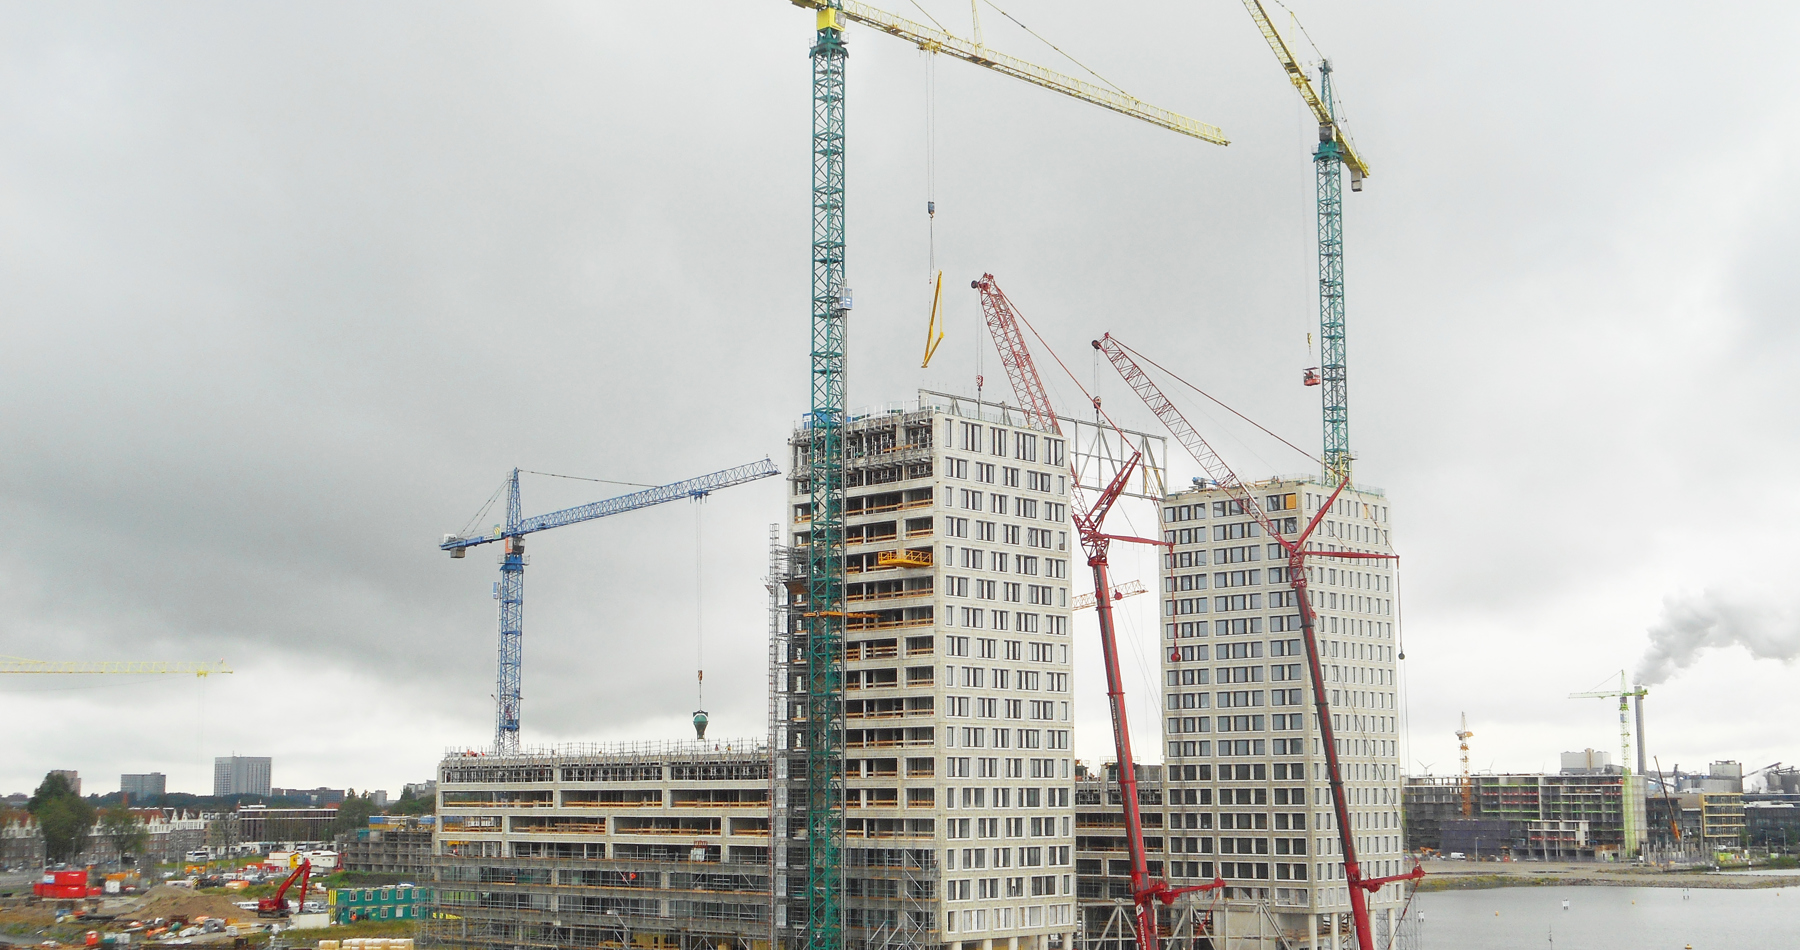 Craftsmanship crane operators is gold standard at Pontsteiger Amsterdam